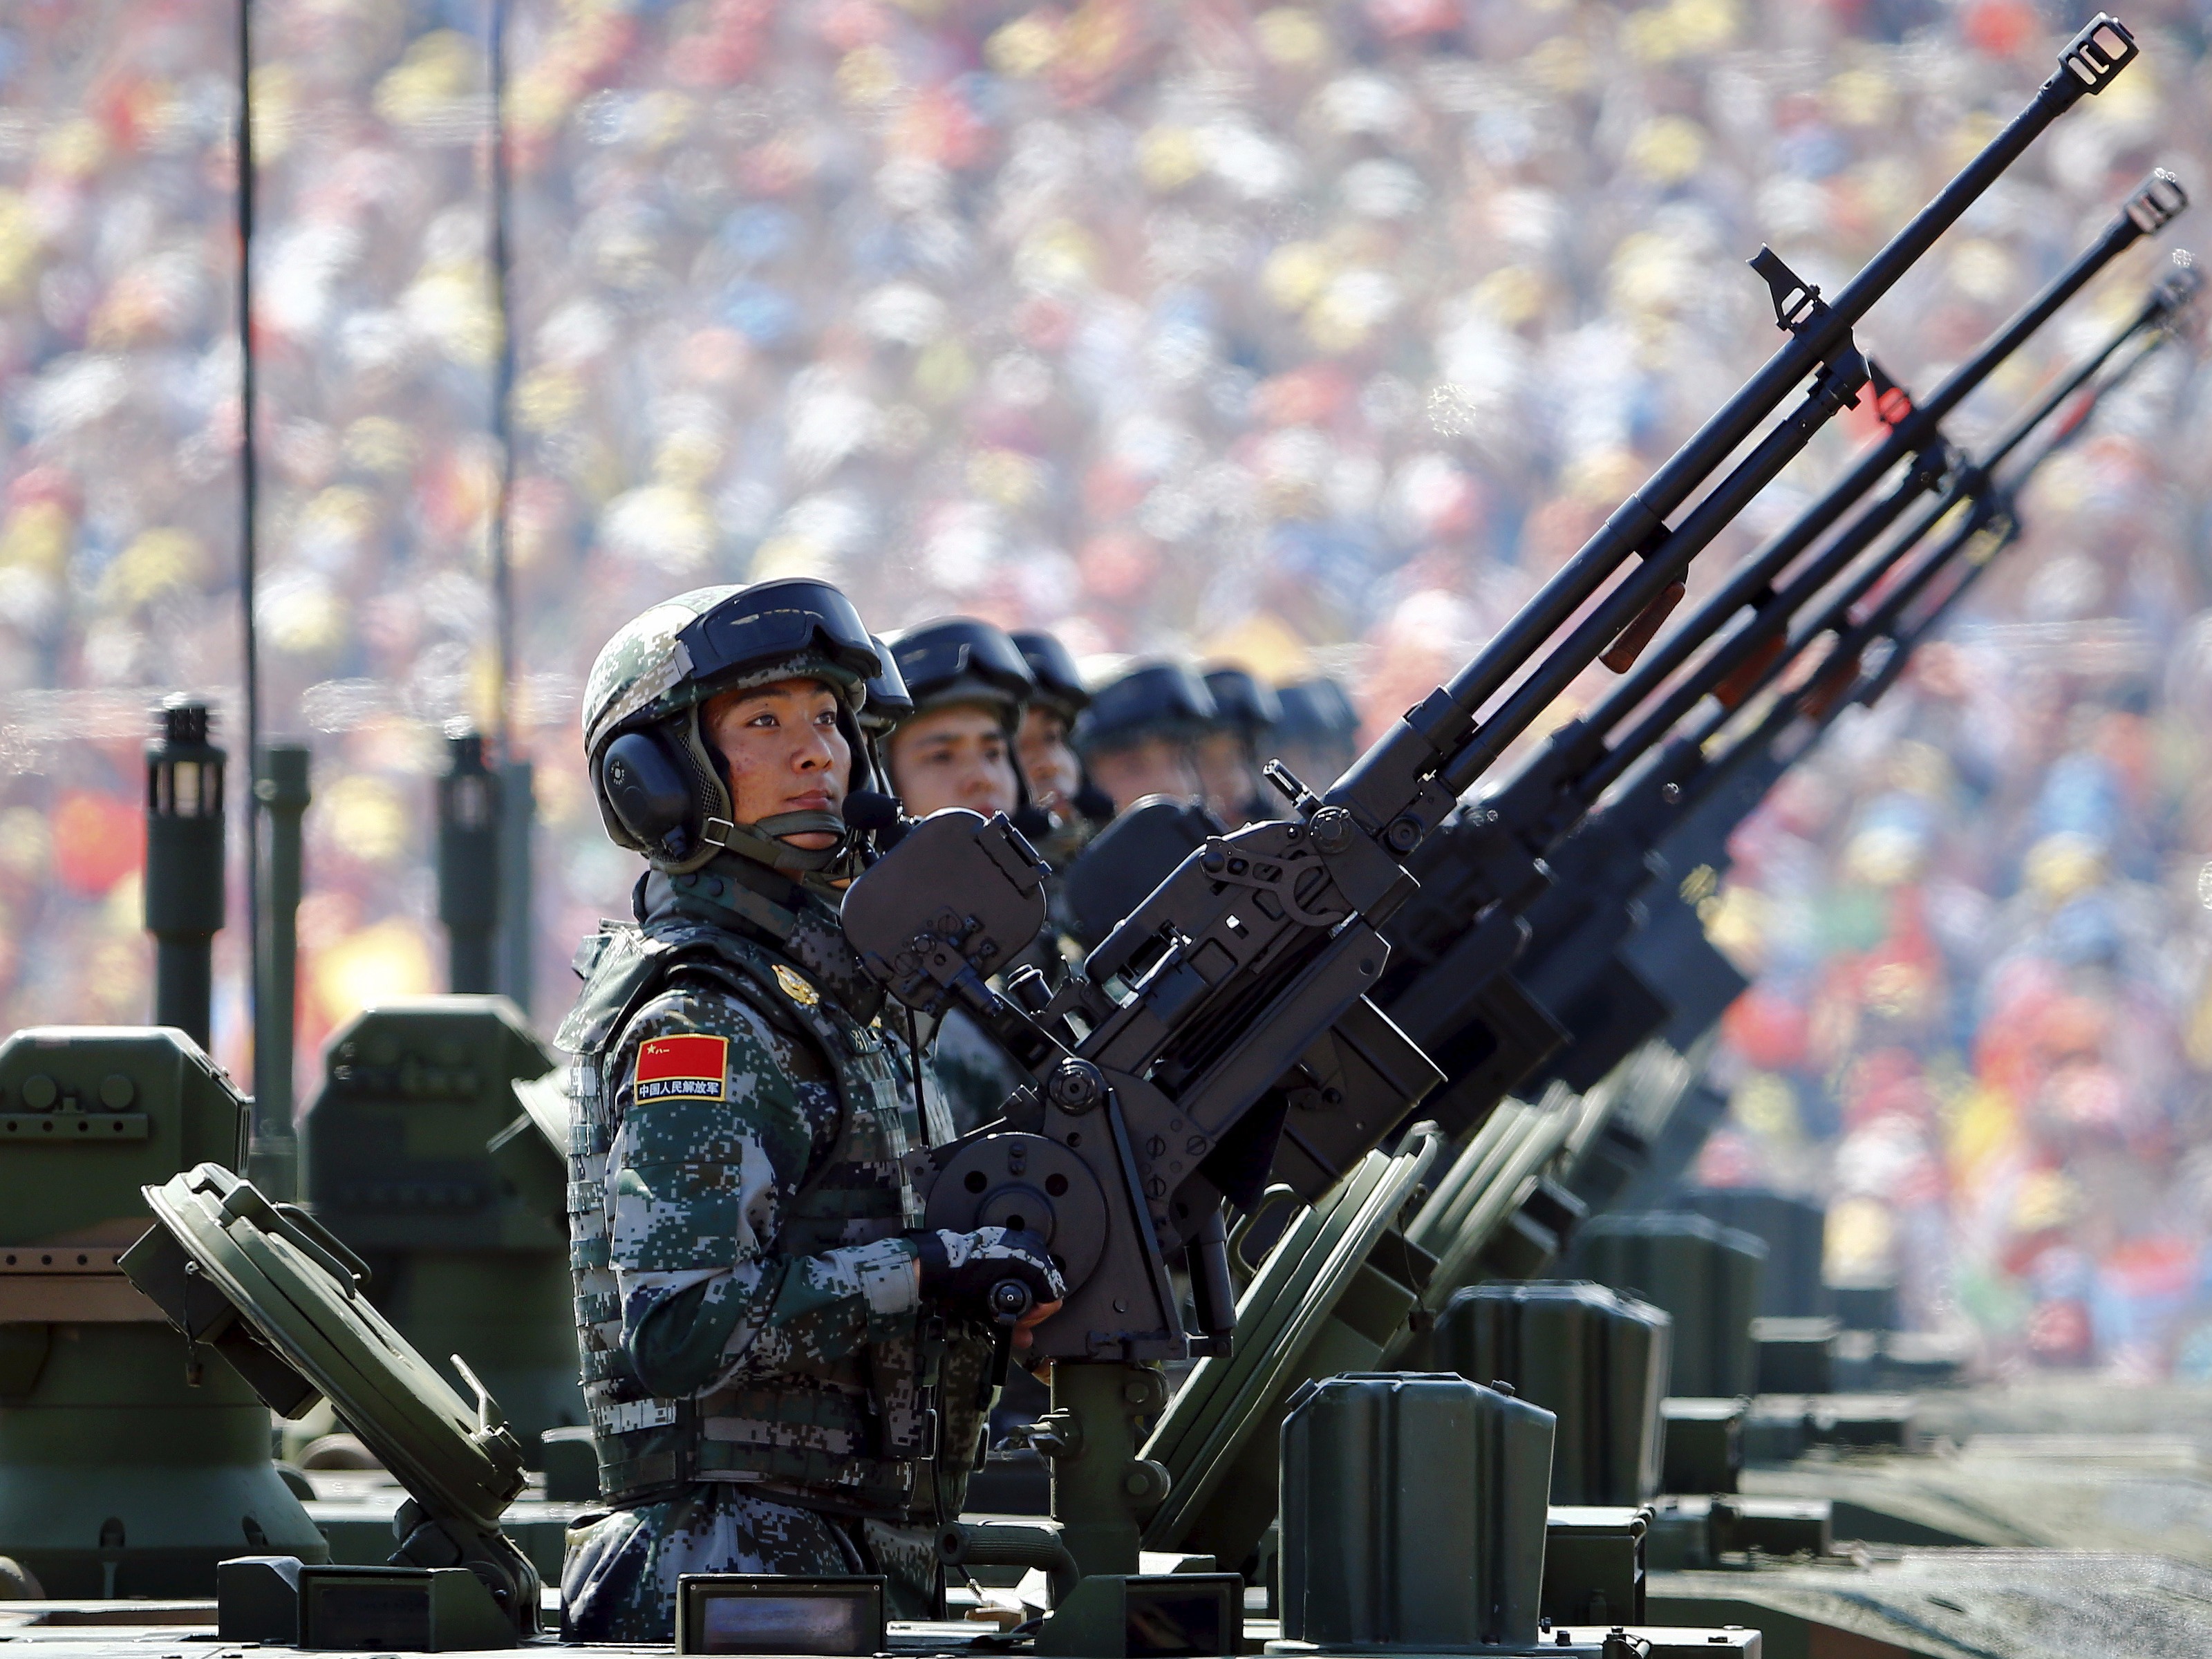 Скачать обои бесплатно Солдат, Армия, Военные, Пулемёт, Китайская Армия картинка на рабочий стол ПК